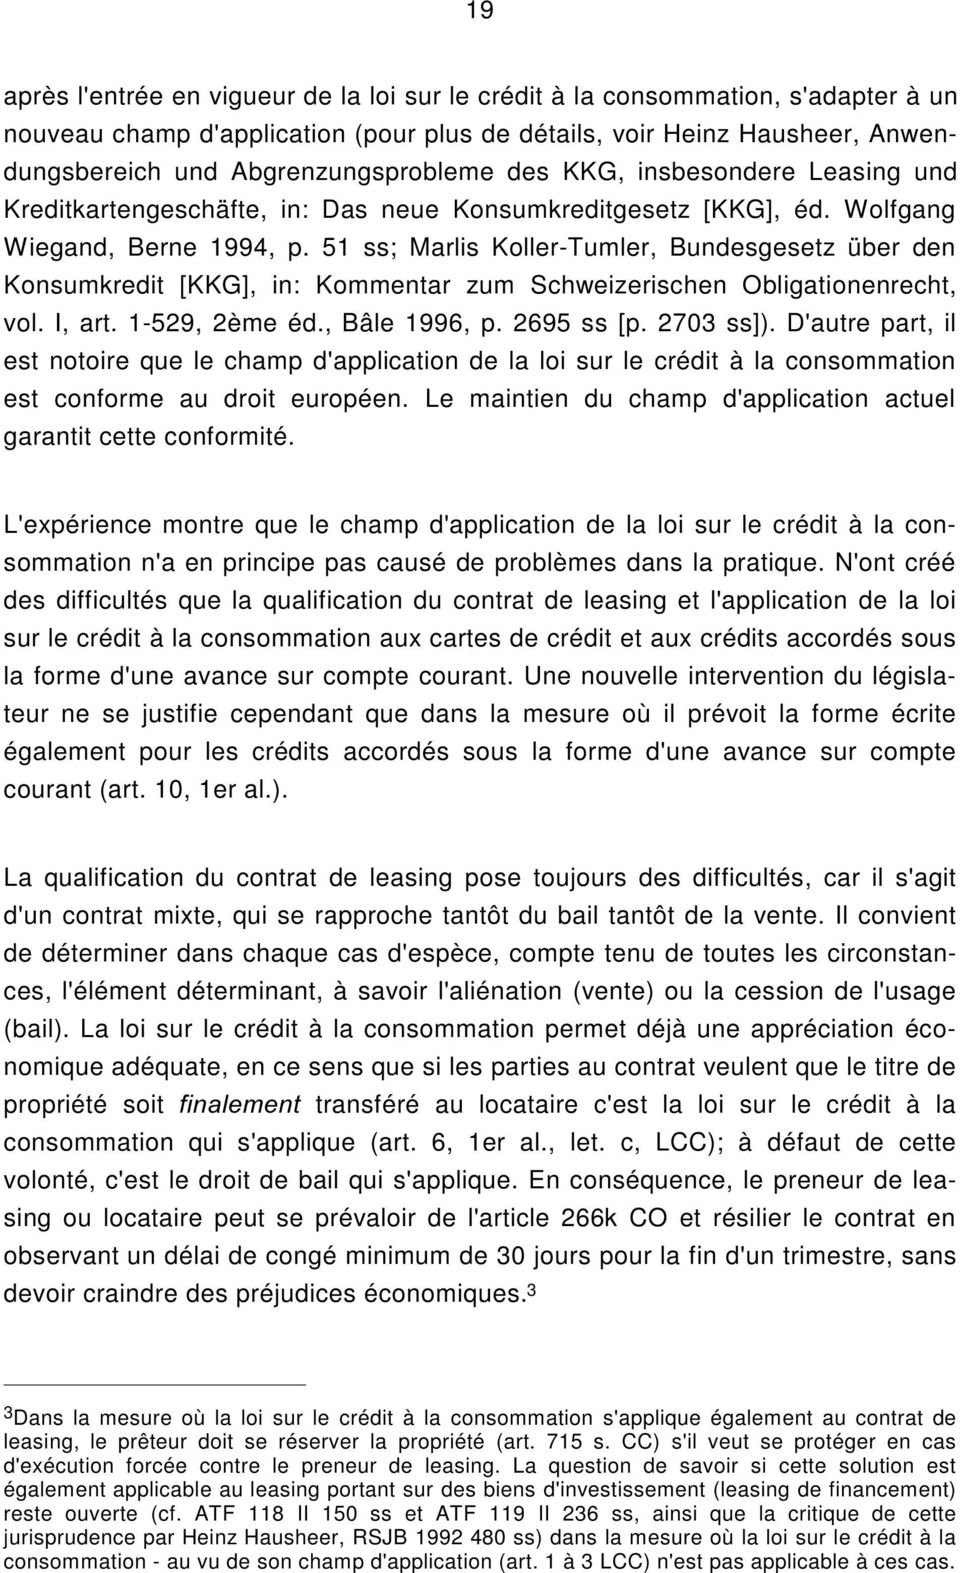 51 ss; Marlis Koller-Tumler, Bundesgesetz über den Konsumkredit [KKG], in: Kommentar zum Schweizerischen Obligationenrecht, vol. I, art. 1-529, 2ème éd., Bâle 1996, p. 2695 ss [p. 2703 ss]).